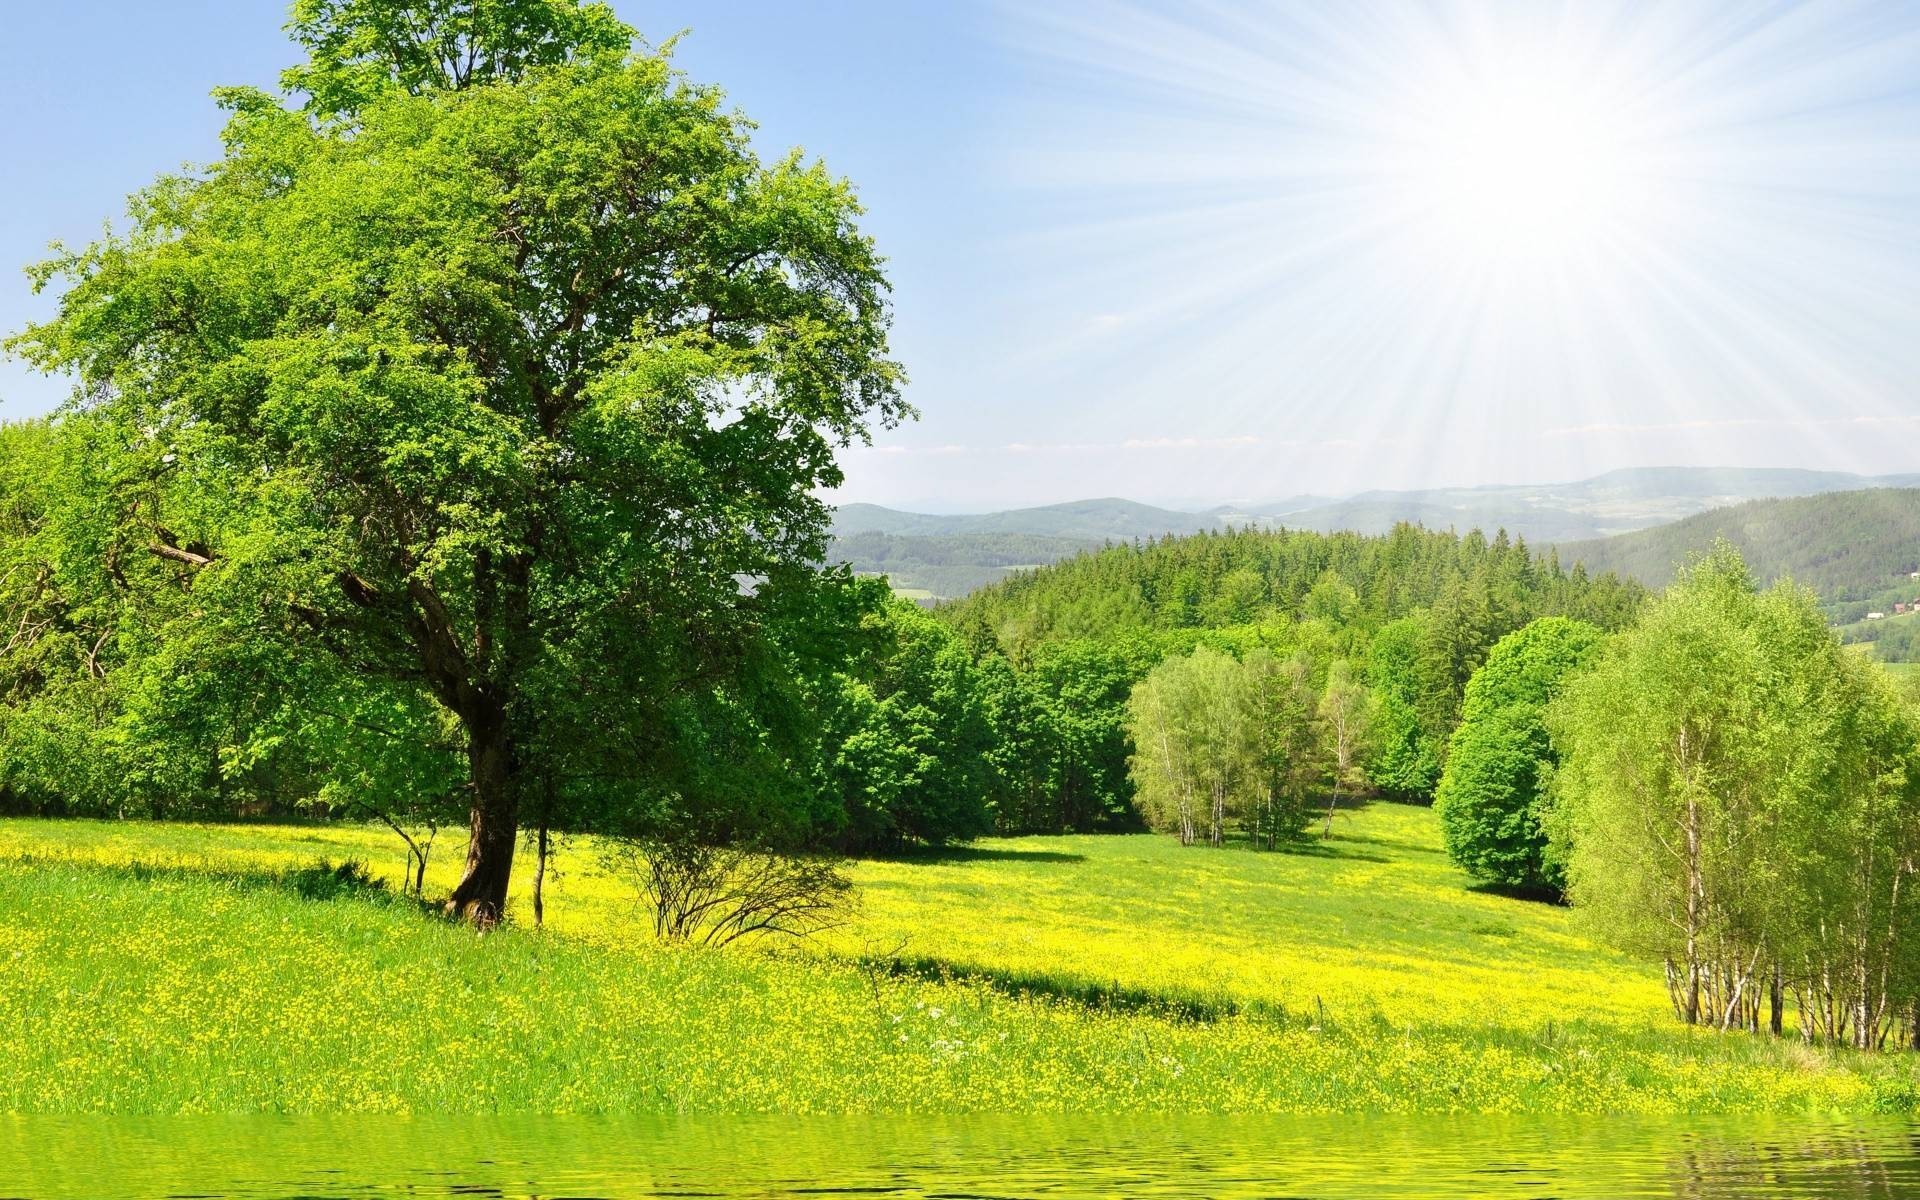 пейзажи пейзаж природа трава сельских дерево лето сенокос сельской местности сцена лист хорошую погоду поле солнце сезон яркий страна древесины живописный зрелище деревья весенне-полевые